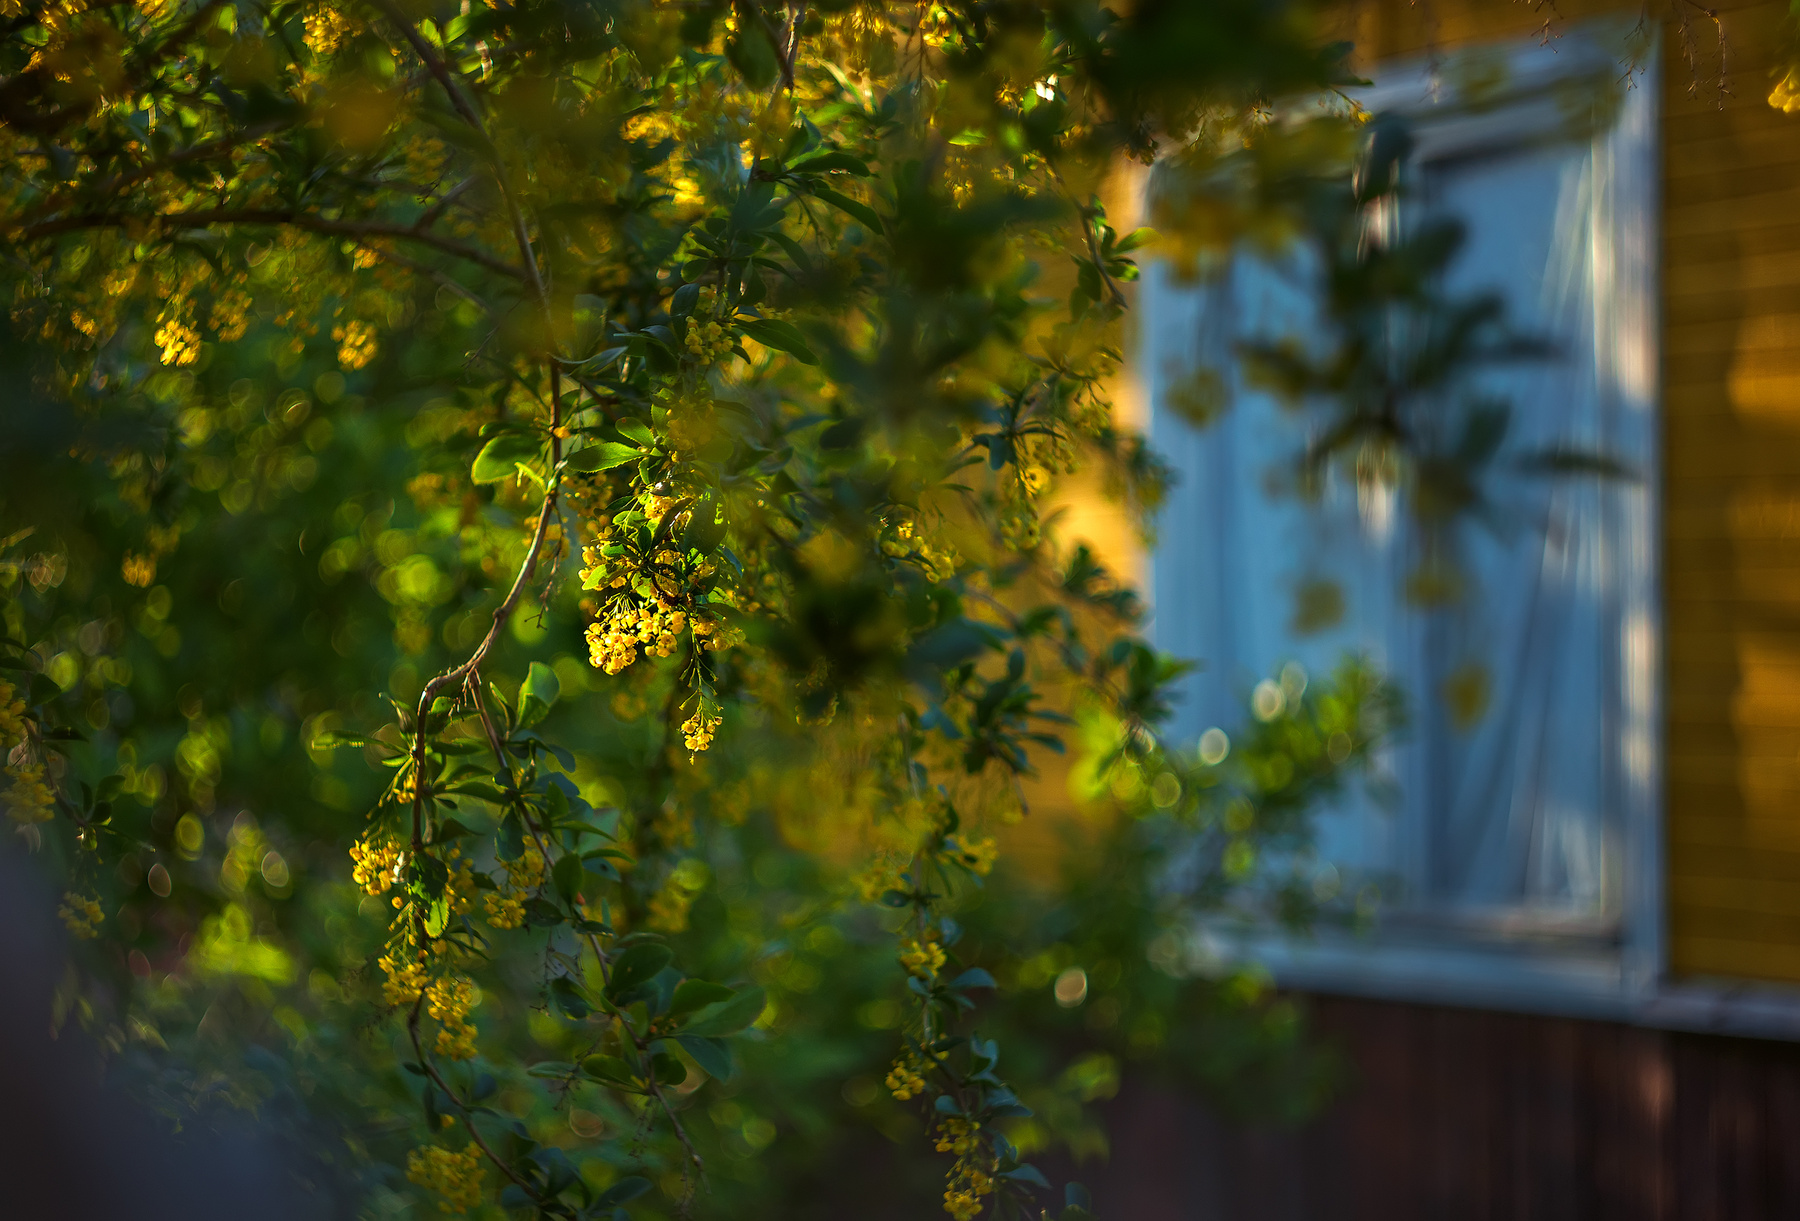 Барбарис расцвел в саду барбарис дача цветы весна закат солнце желтый свет мануальная оптика гелиос